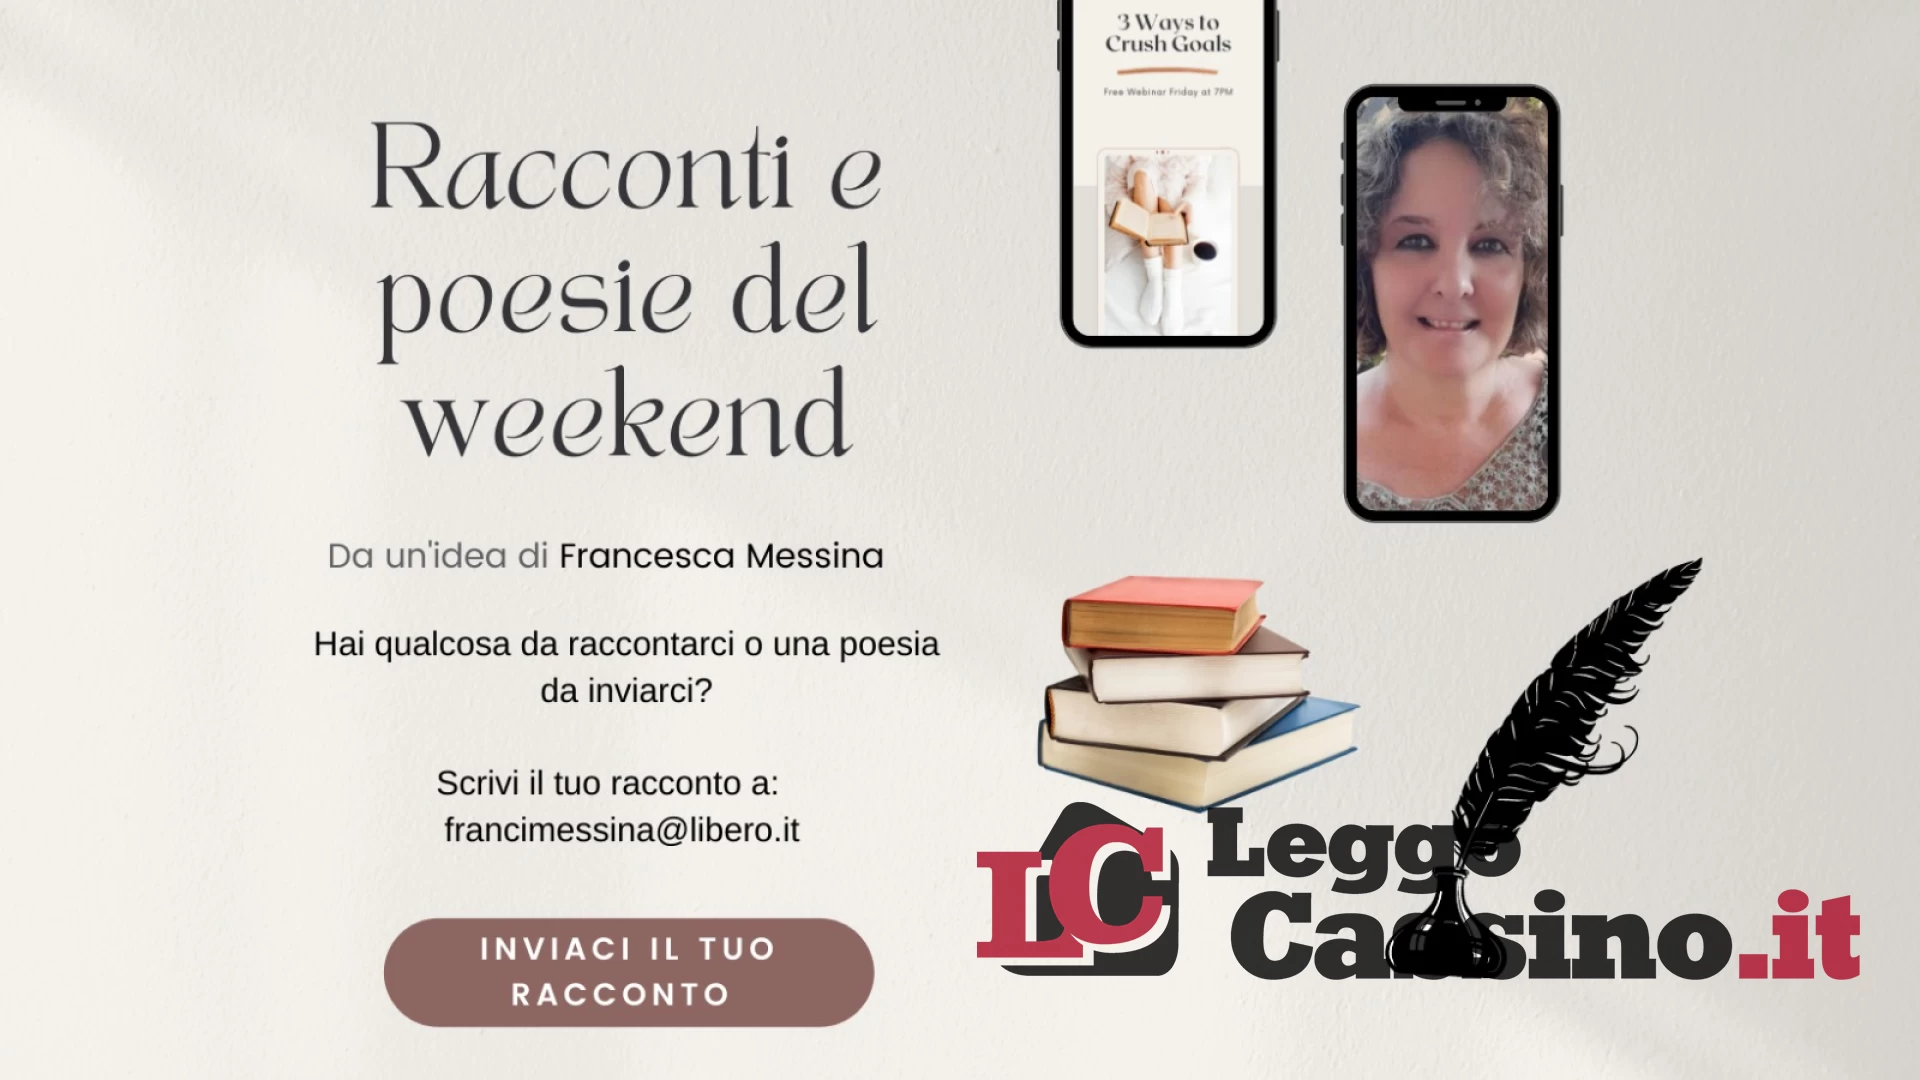 Racconti e Poesie del weekend - "Cassino zampilla"